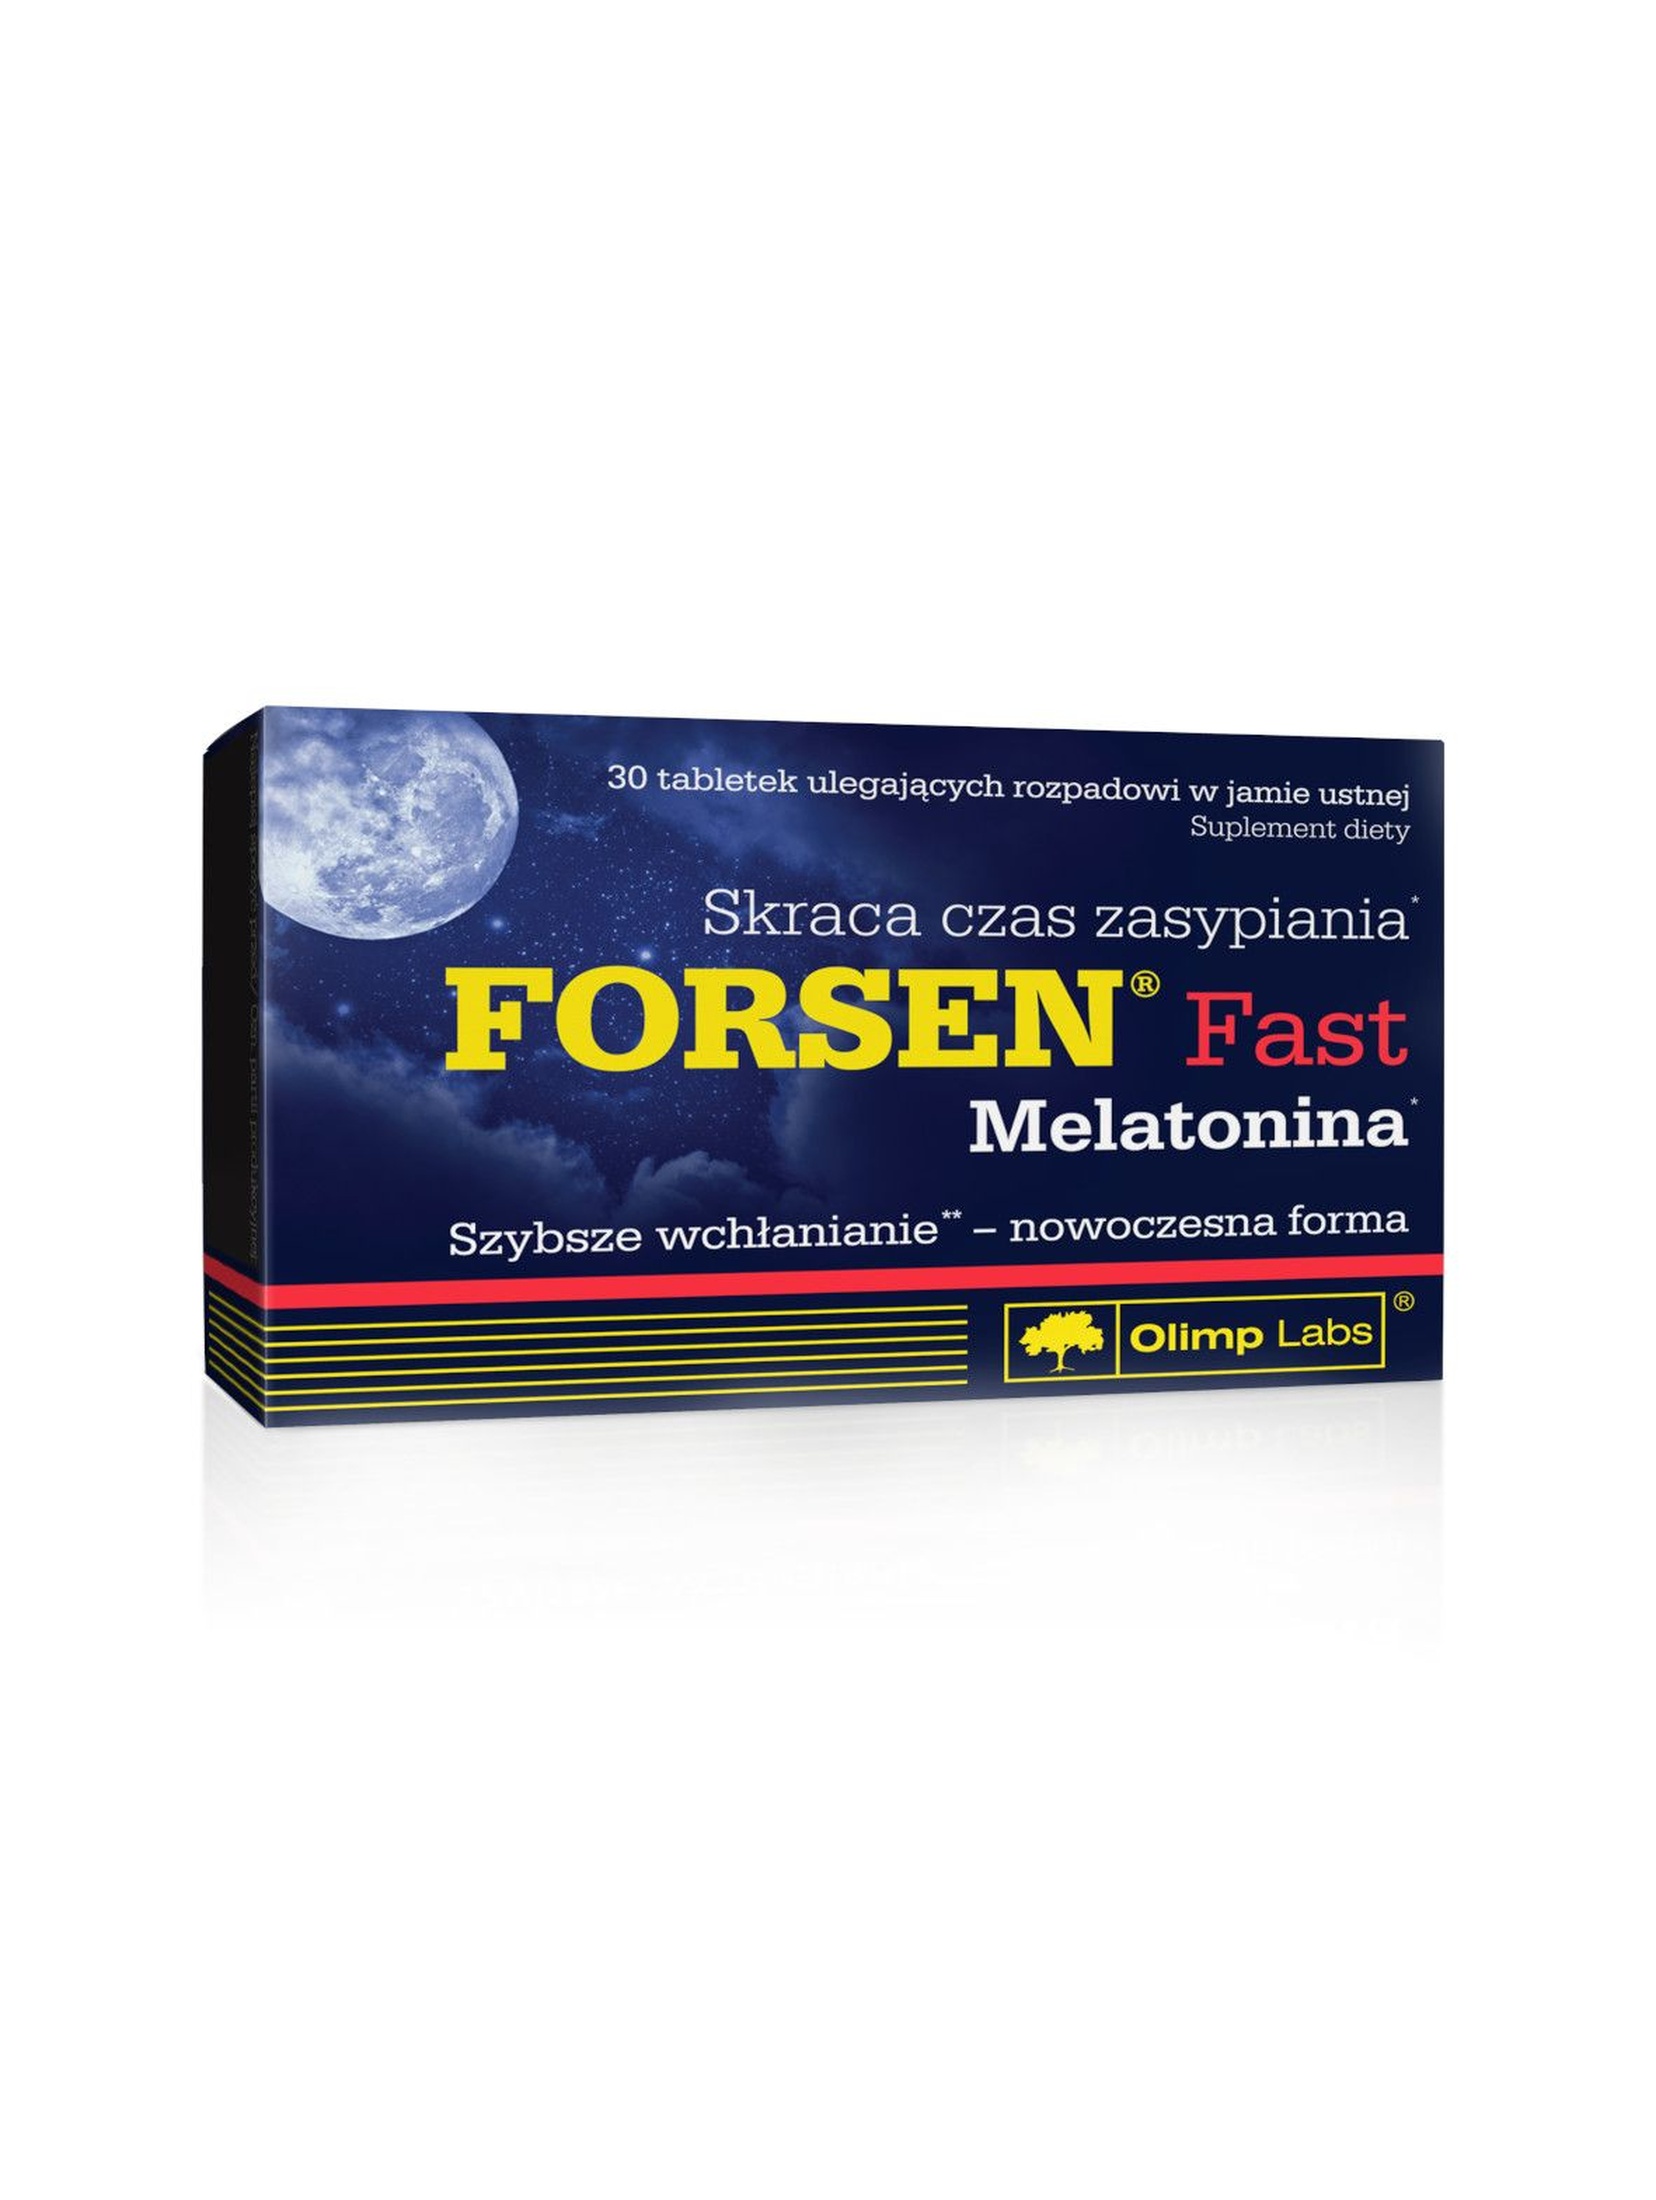 Forsen® Fast Melatonina 30 tabletek